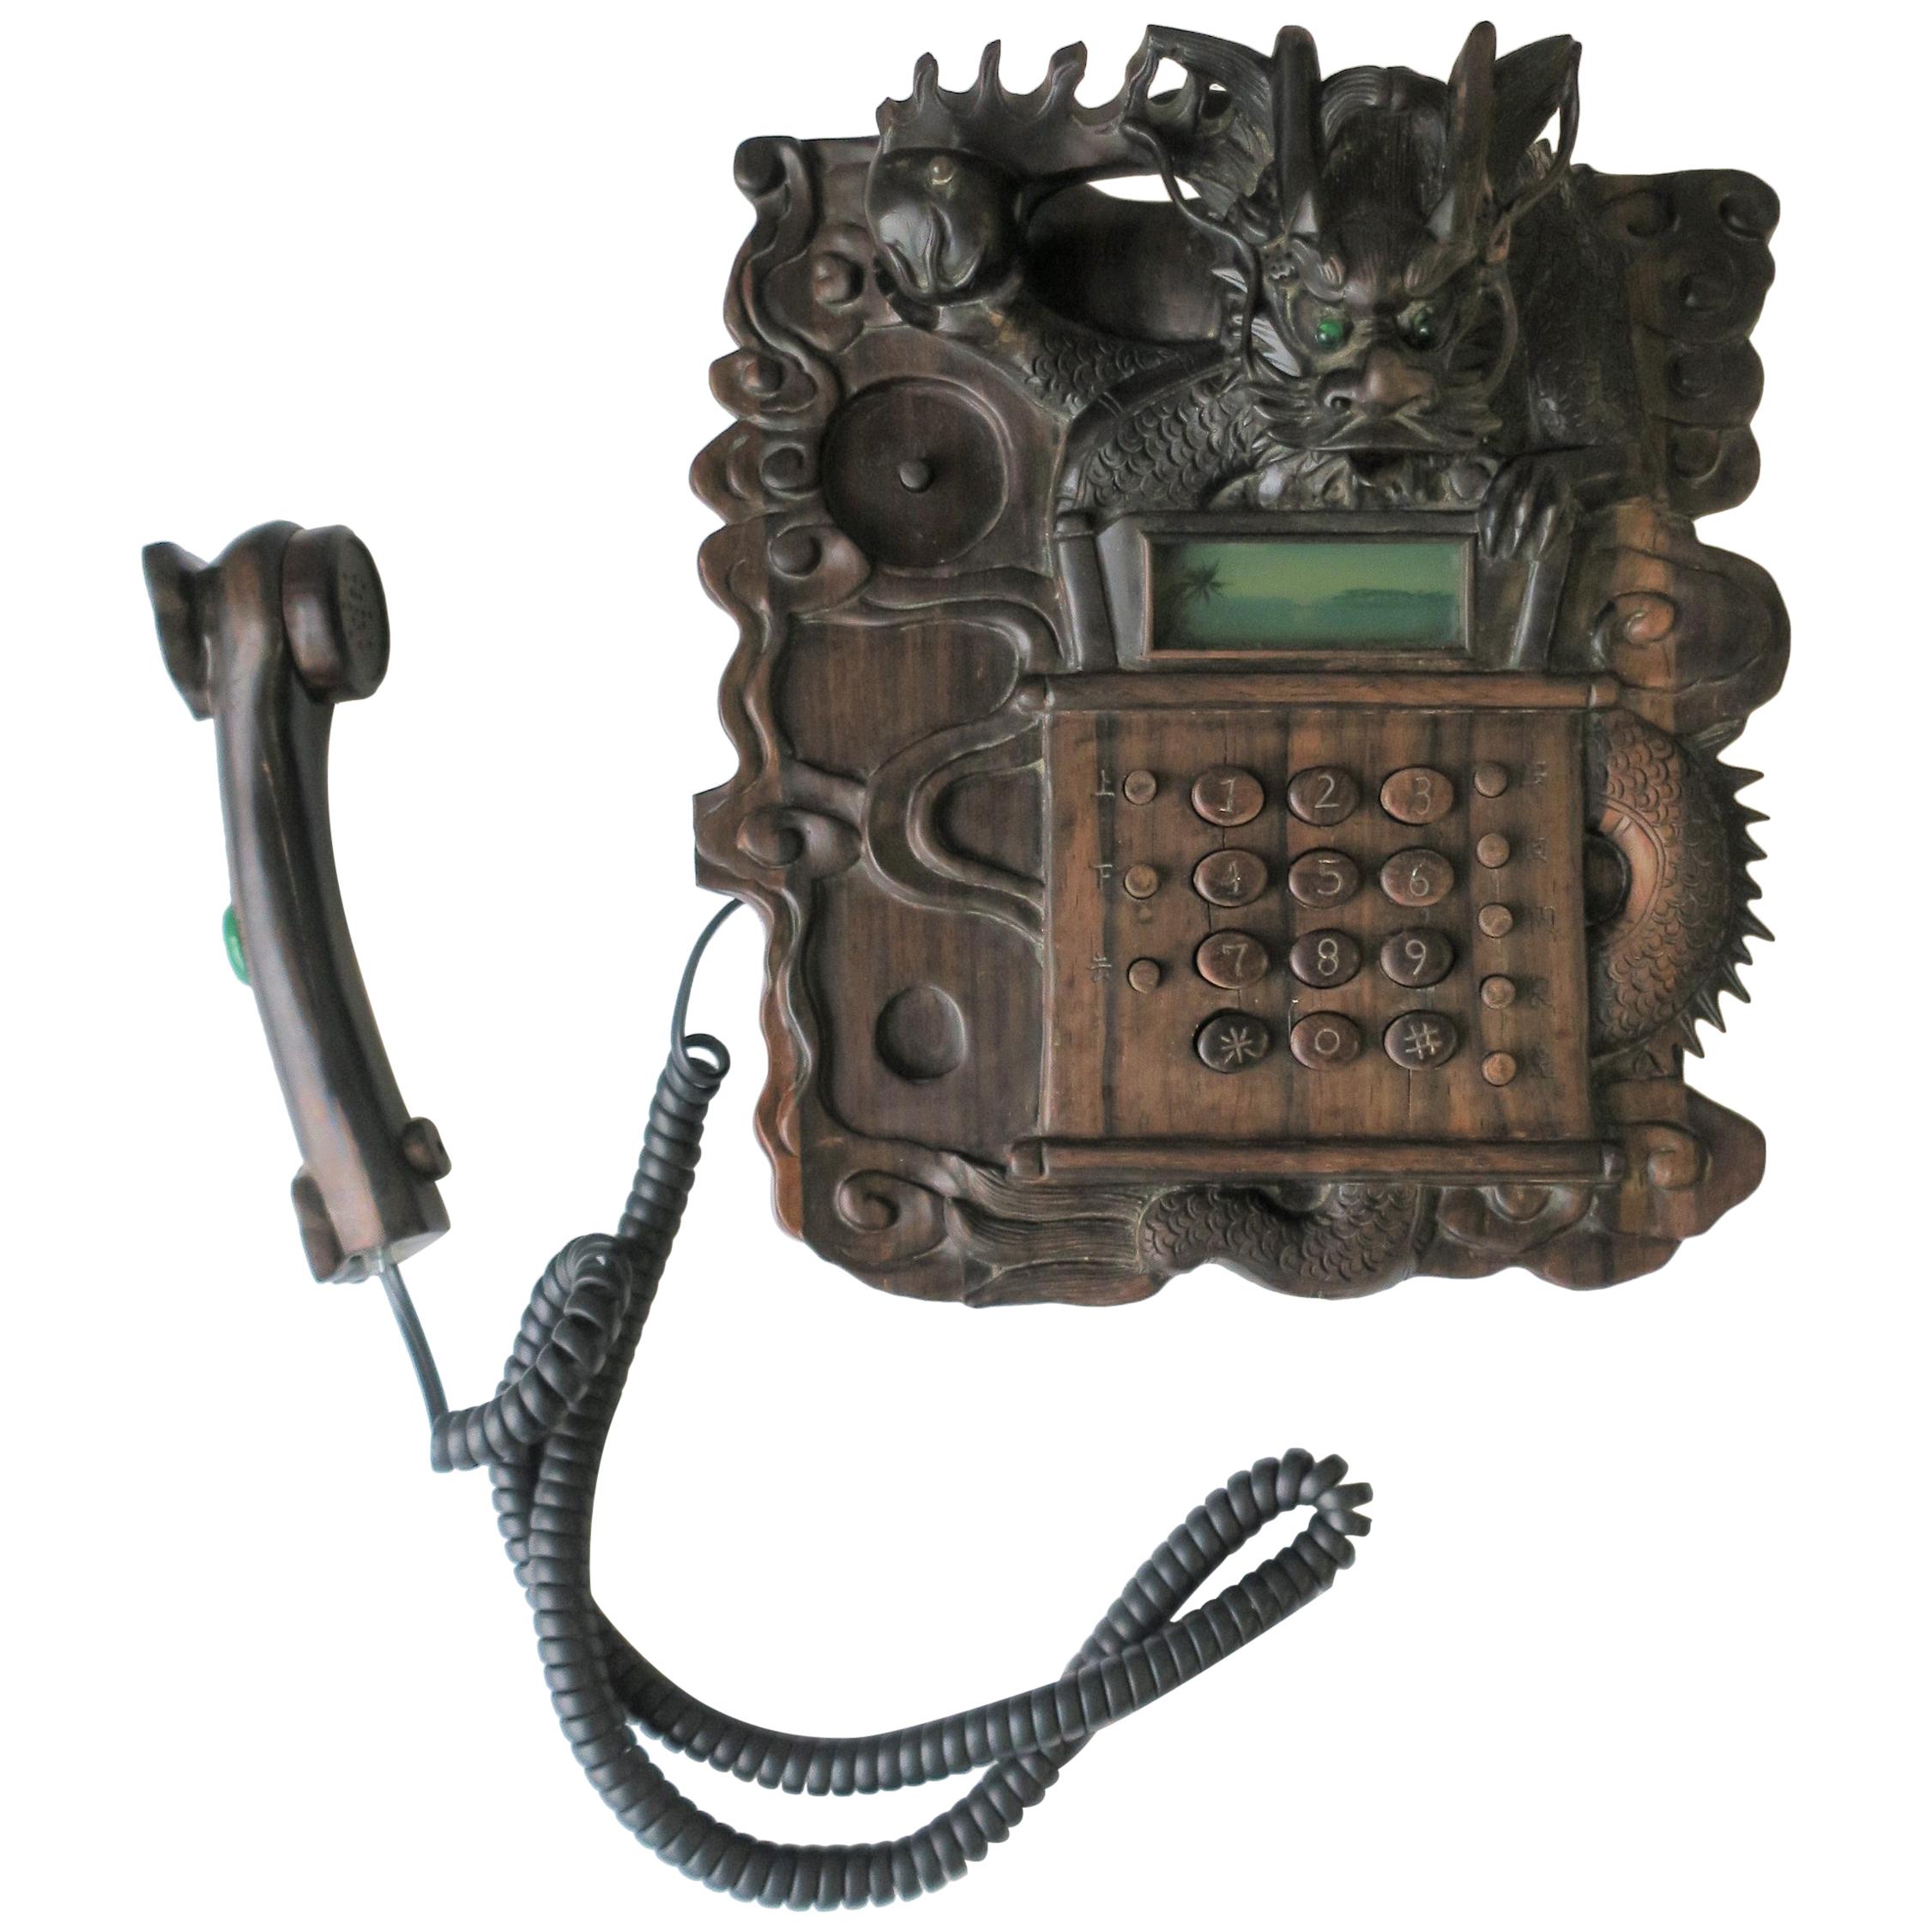 Chinese Dragon Telephone, circa 1980s